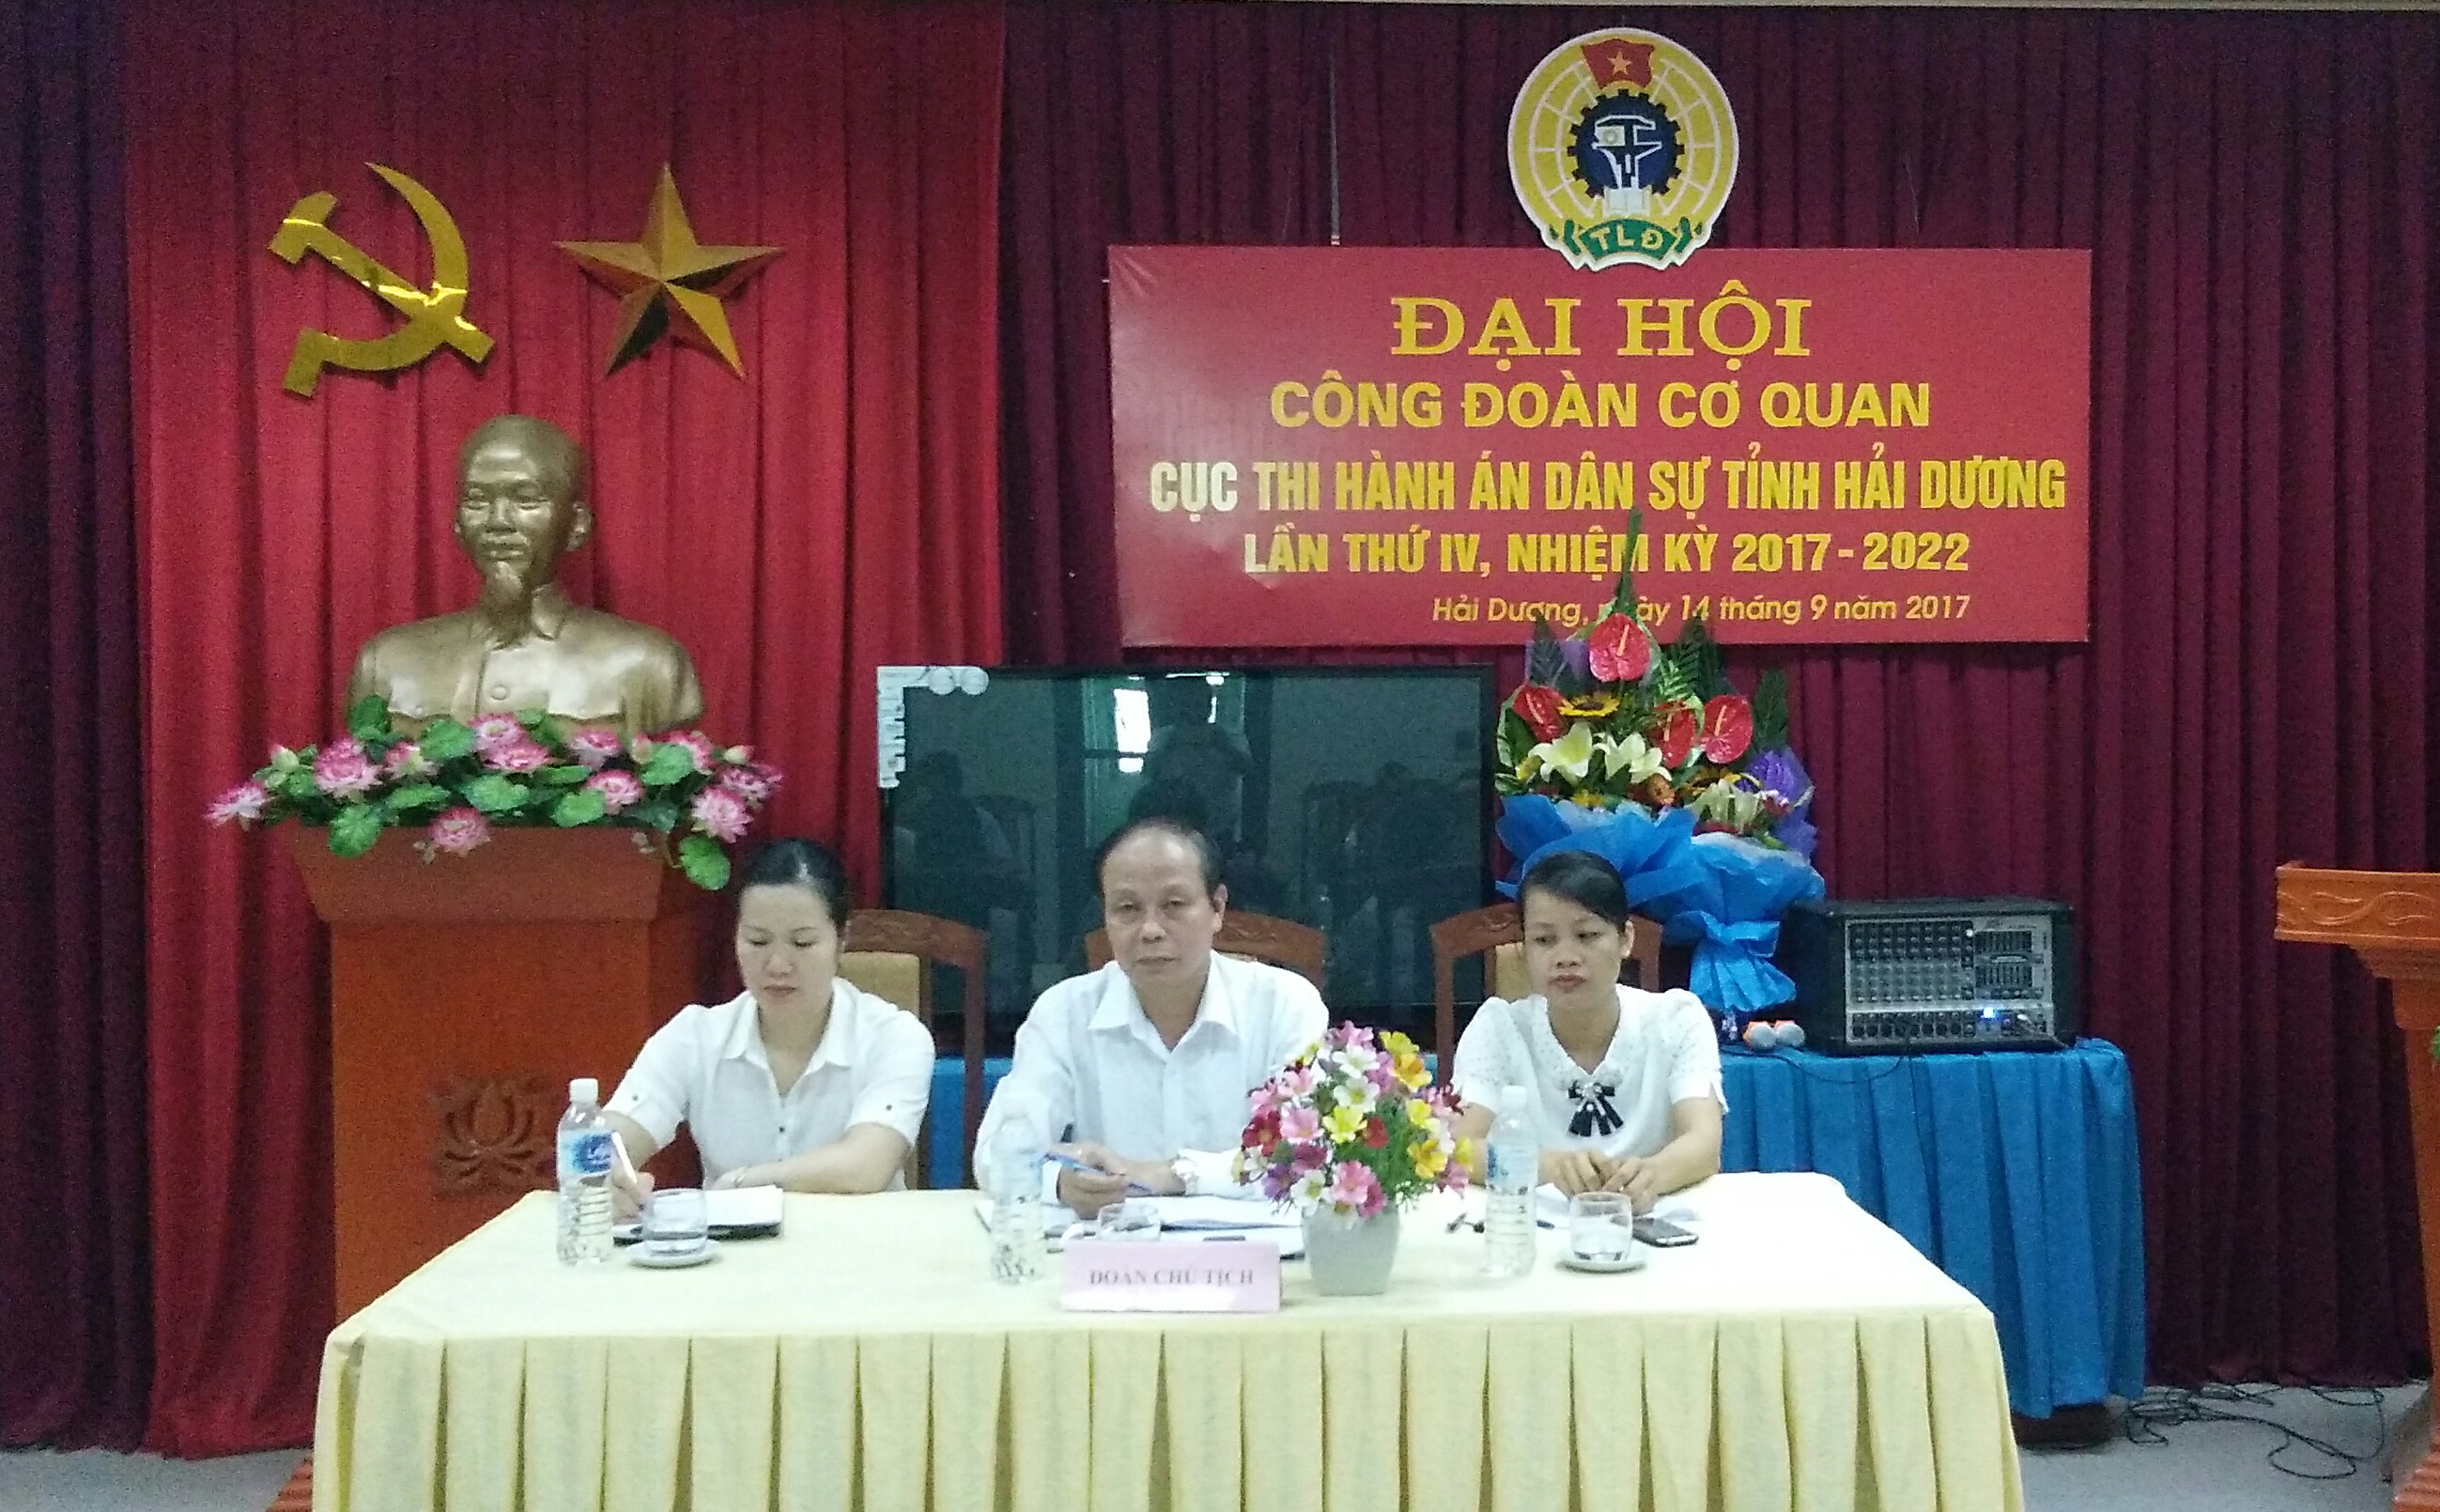 Công đoàn Bộ phận cơ quan Cục Thi hành án dân sự tỉnh Hải Dương tổ chức Đại hội  Lần thứ IV, nhiệm kỳ 2017 - 2022